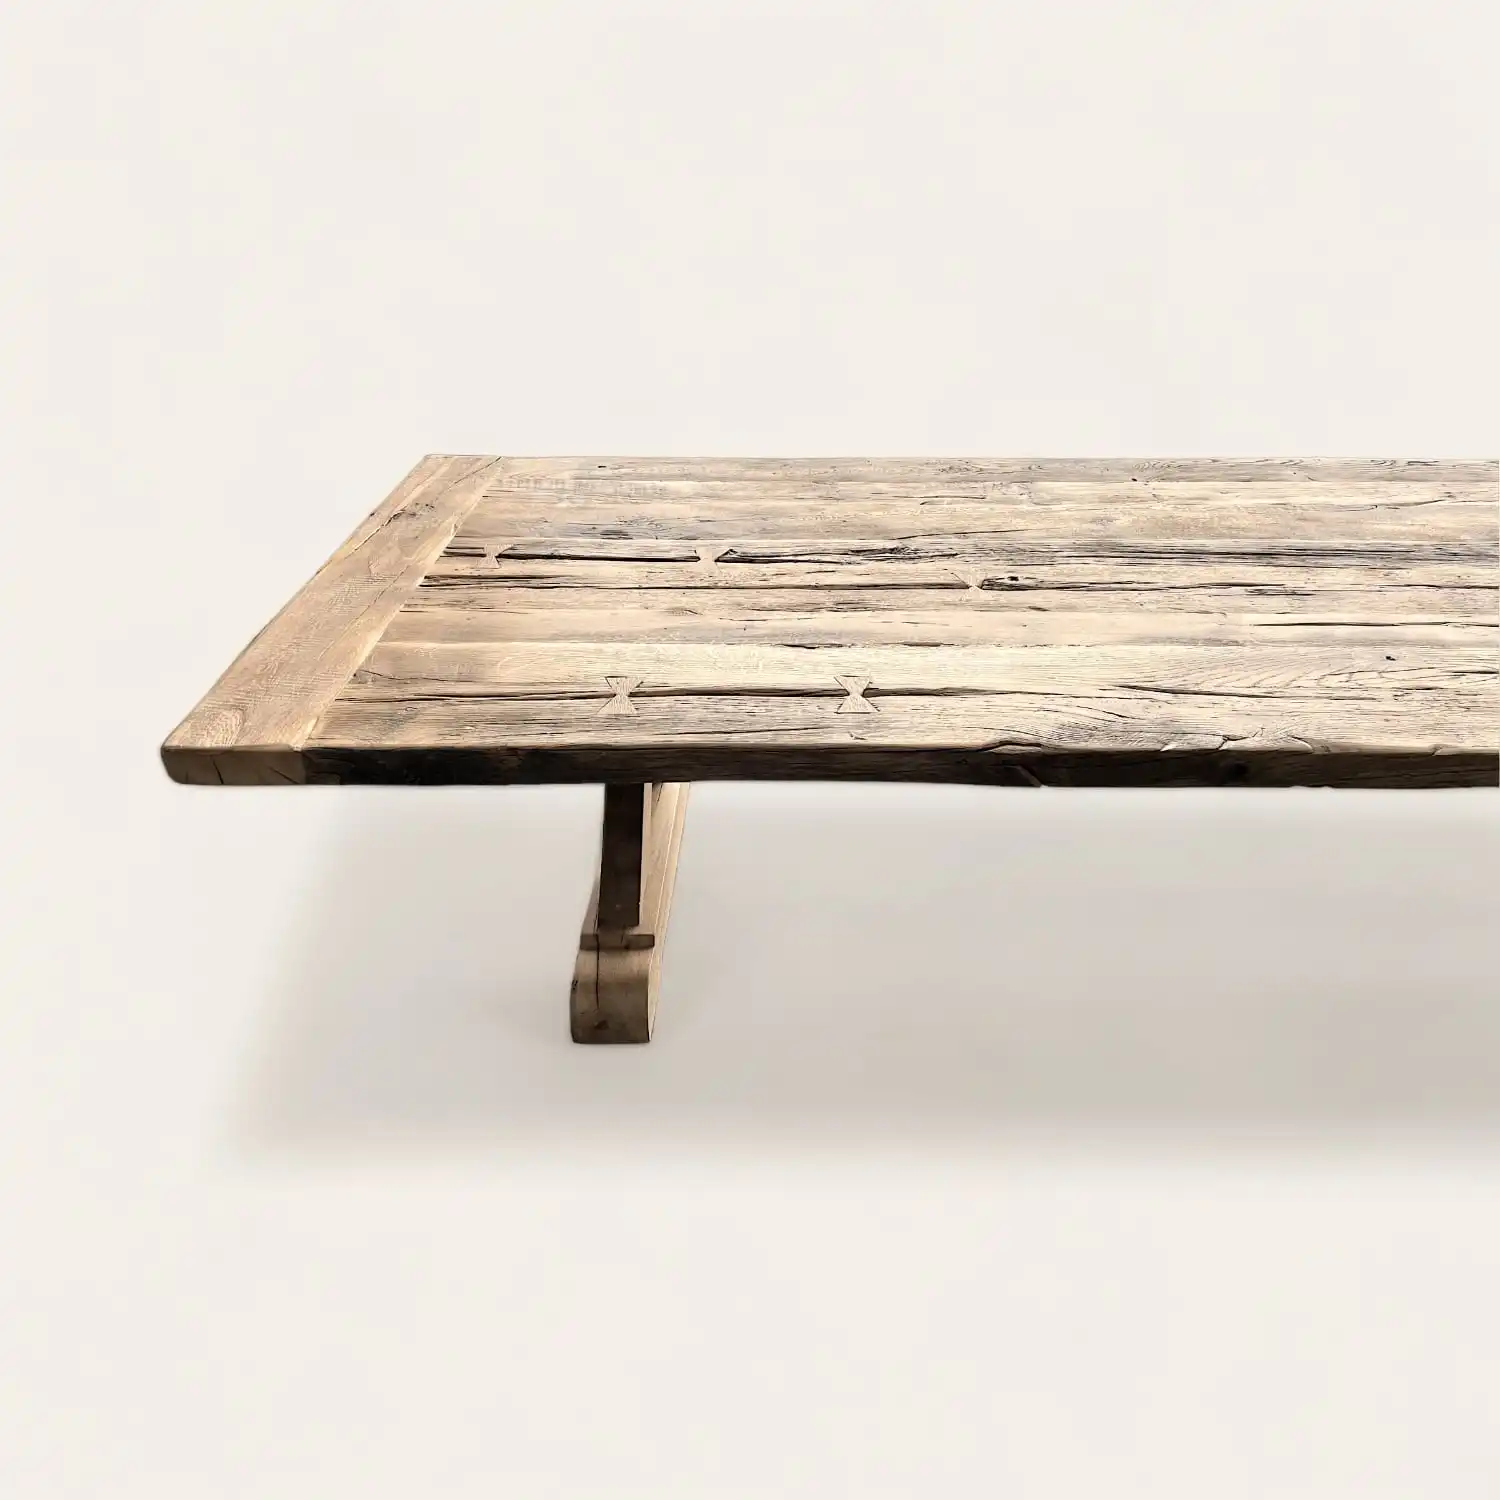  Table fermette robuste en bois ancien patiné avec pied central simple, évoquant la chaleur rustique et l'artisanat durable. 